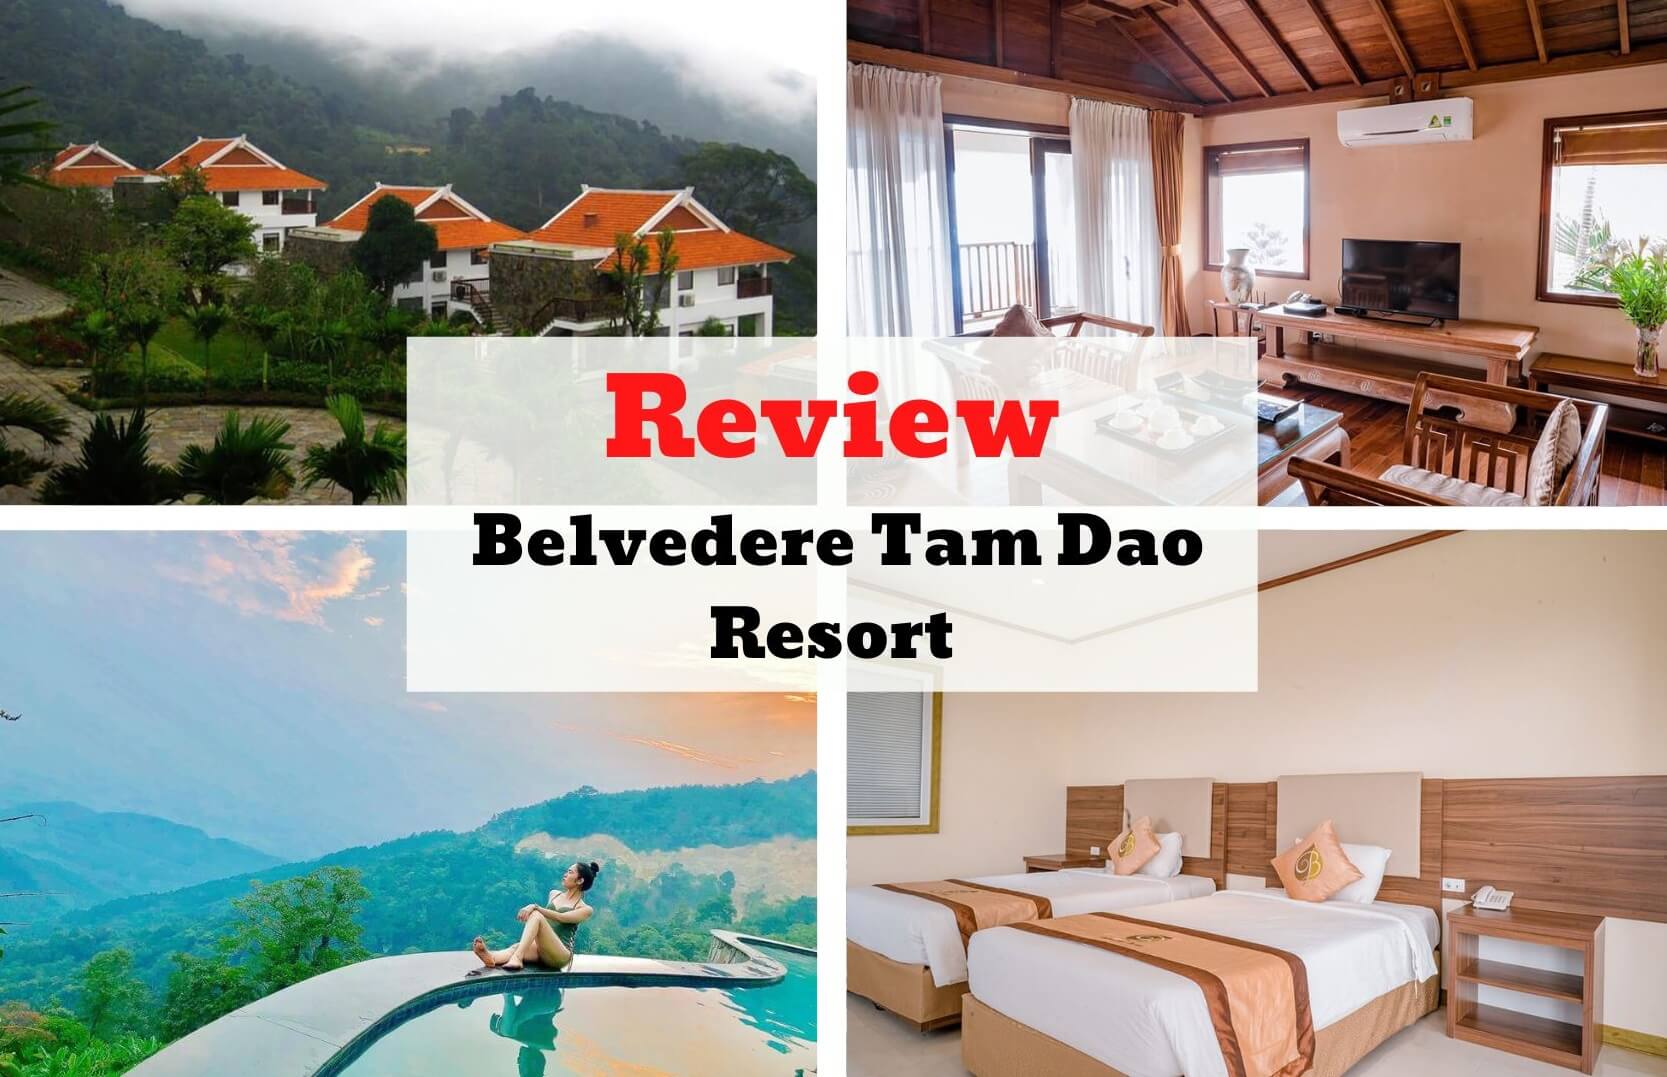 Review Belvedere Tam Dao Resort - Thiên đường thơ mộng tại Tam Đảo